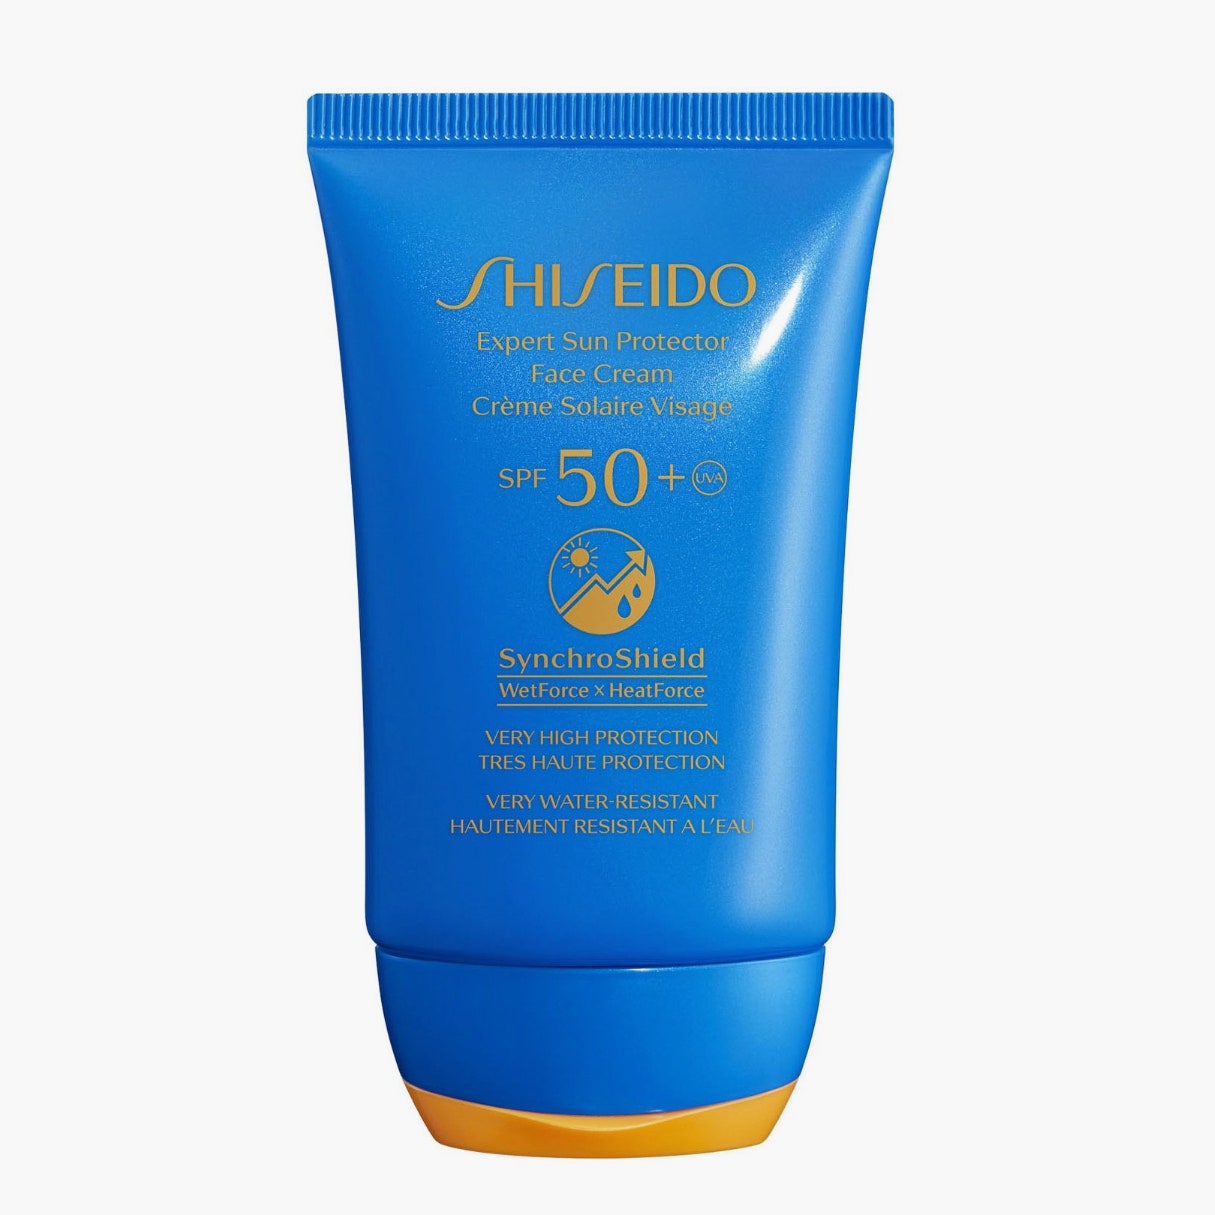 Солнцезащитный крем для лица Expert Sun SPF 50 Shiseido 2980 рублей